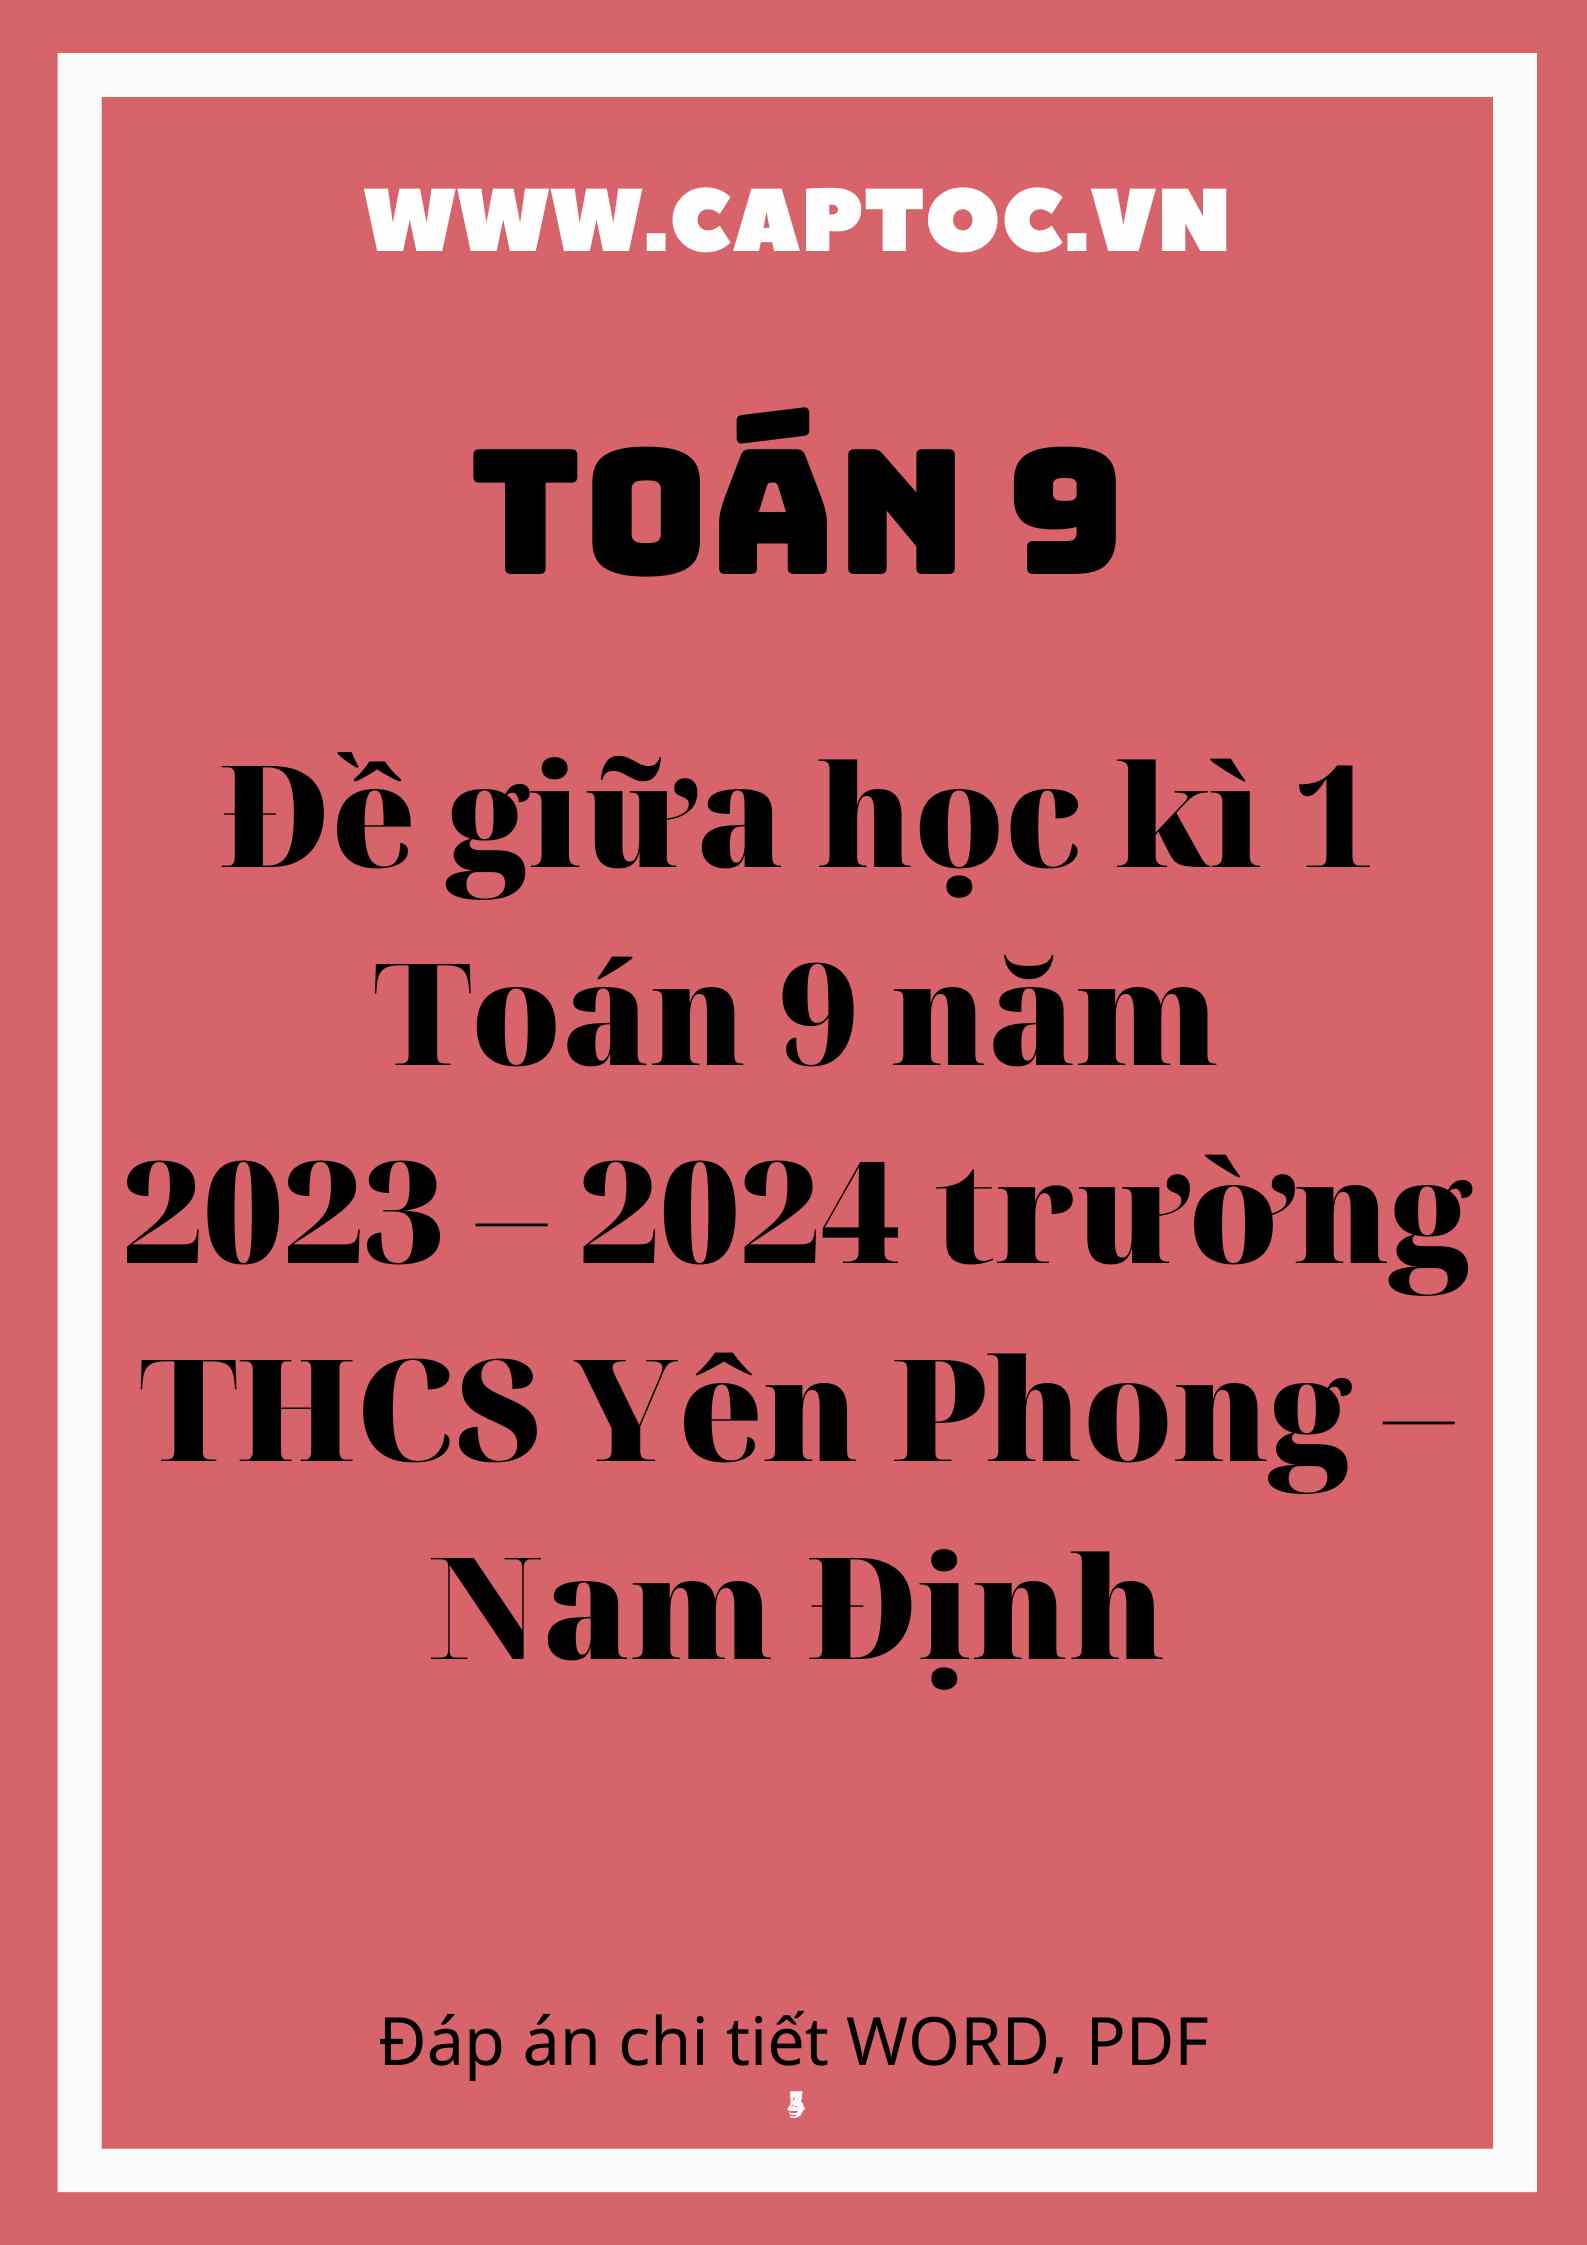 Đề giữa học kì 1 Toán 9 năm 2023 – 2024 trường THCS Yên Phong – Nam Định